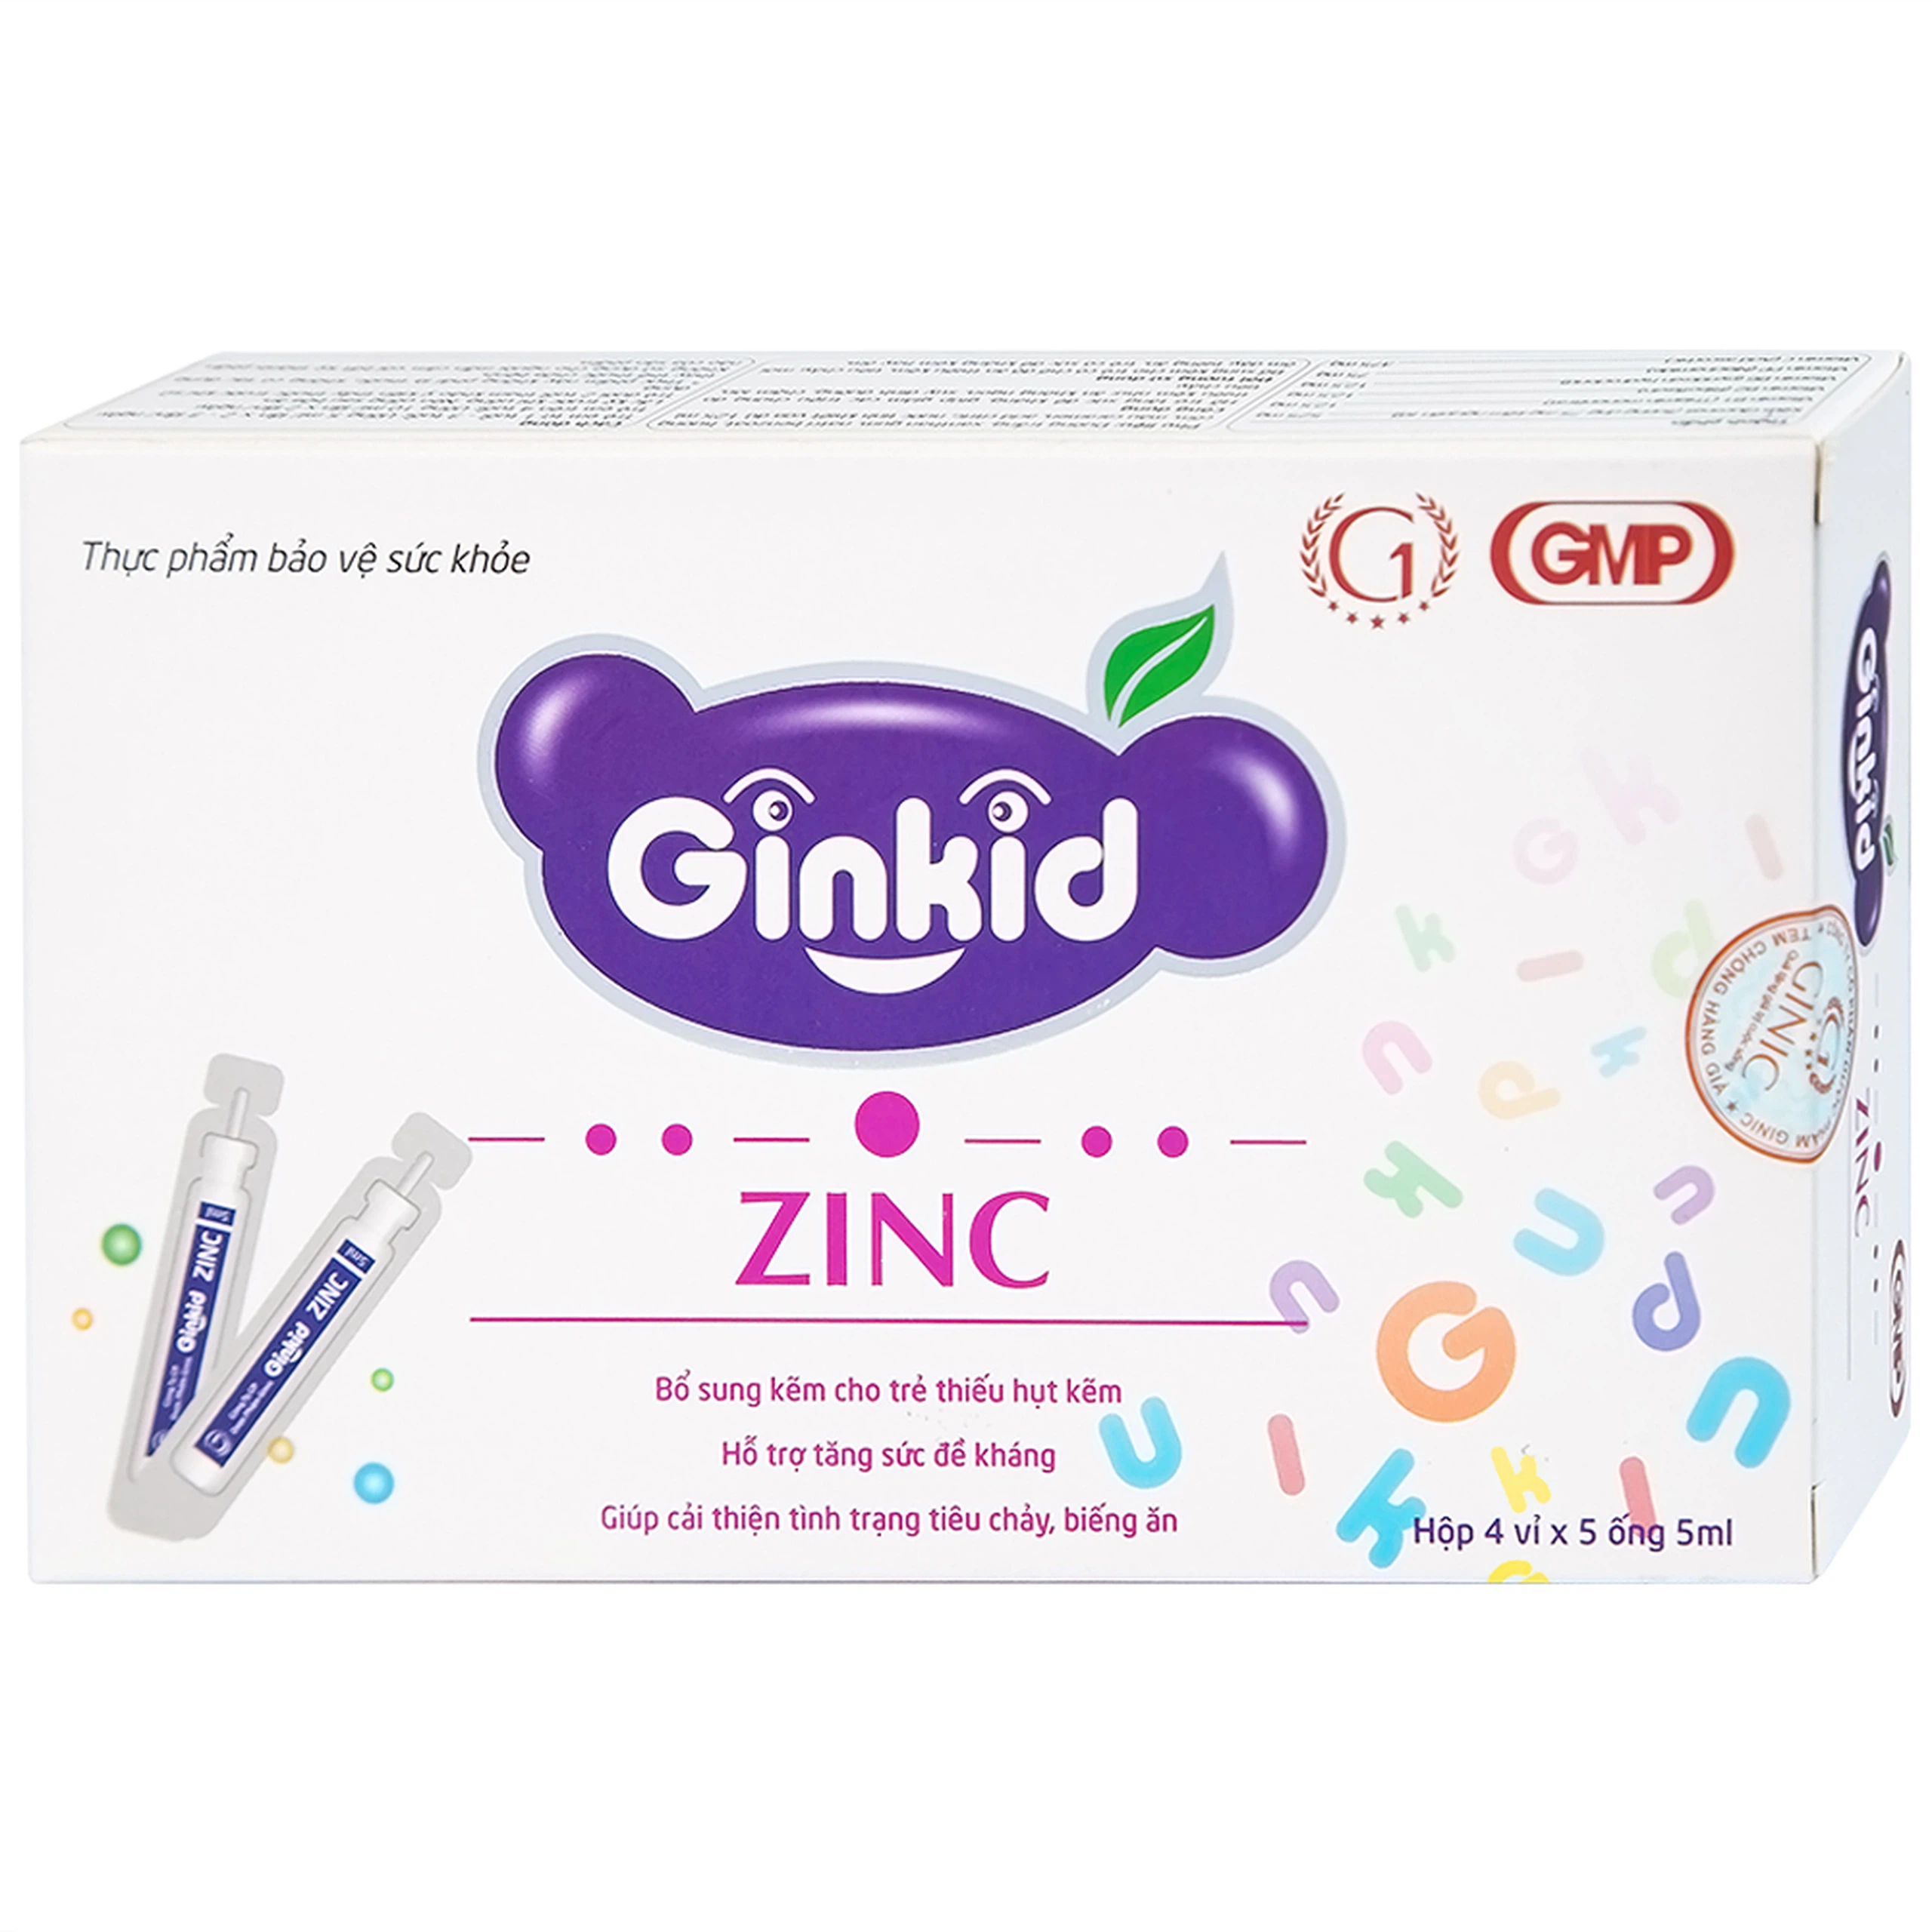 Siro Ginkid ZinC bổ sung kẽm, hỗ trợ tăng sức đề kháng (4 vỉ x 5 ống x 5ml)